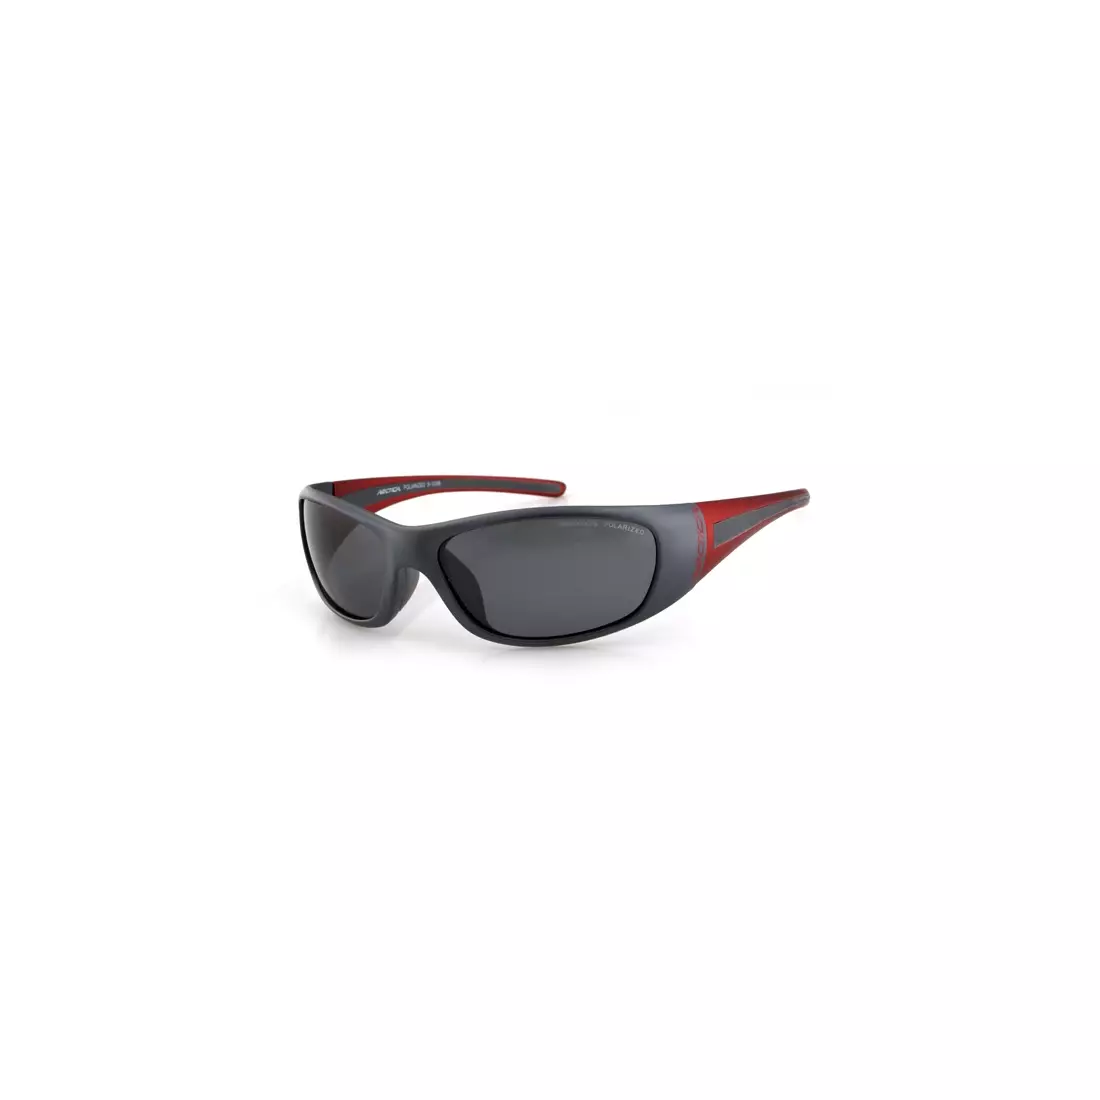 ARCTICA sportszemüveg S-103 B - szín: Szürke-piros